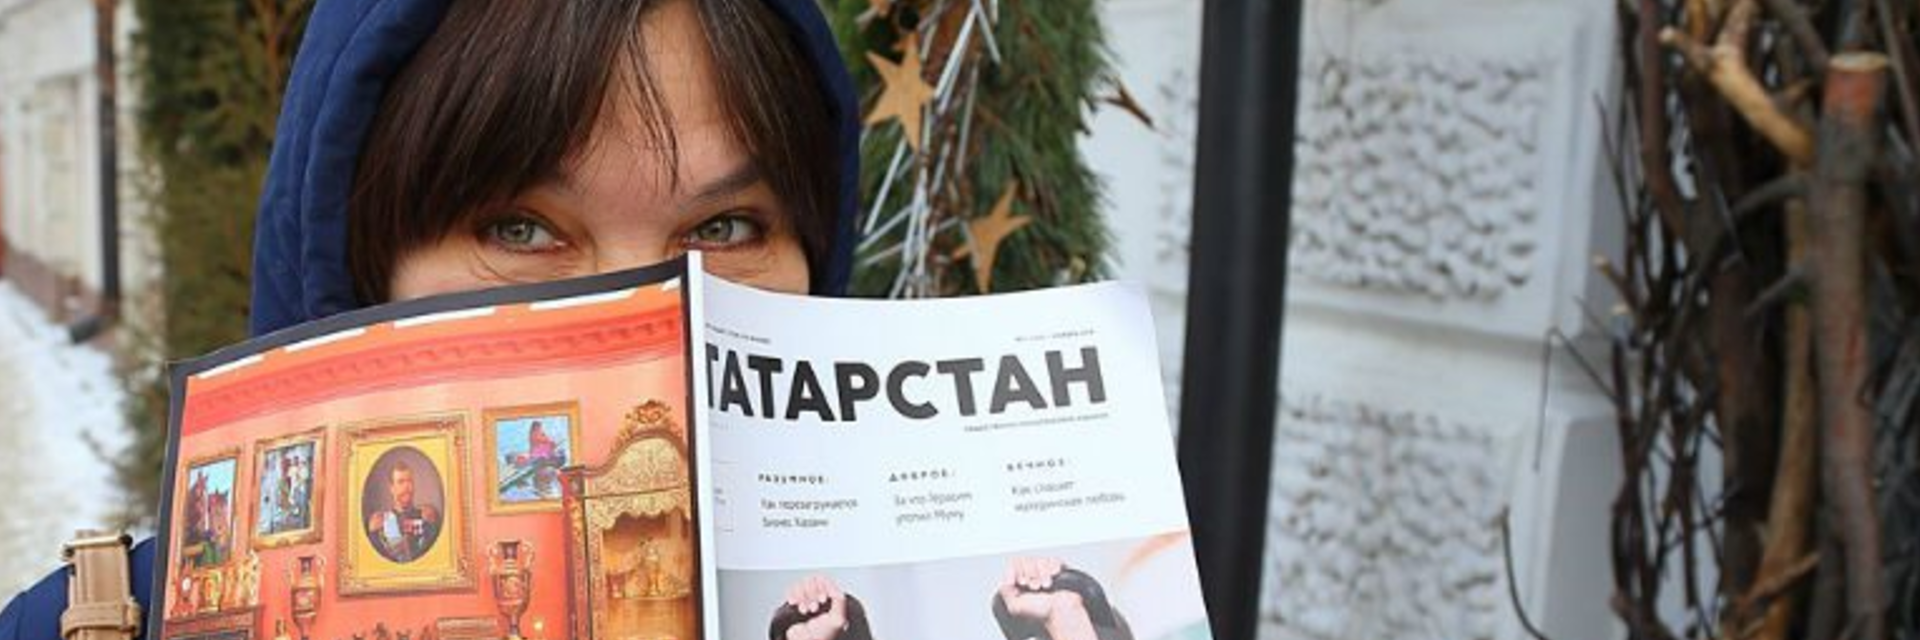 Онлайн-прогулки по «Татарстану»: маска не нужна